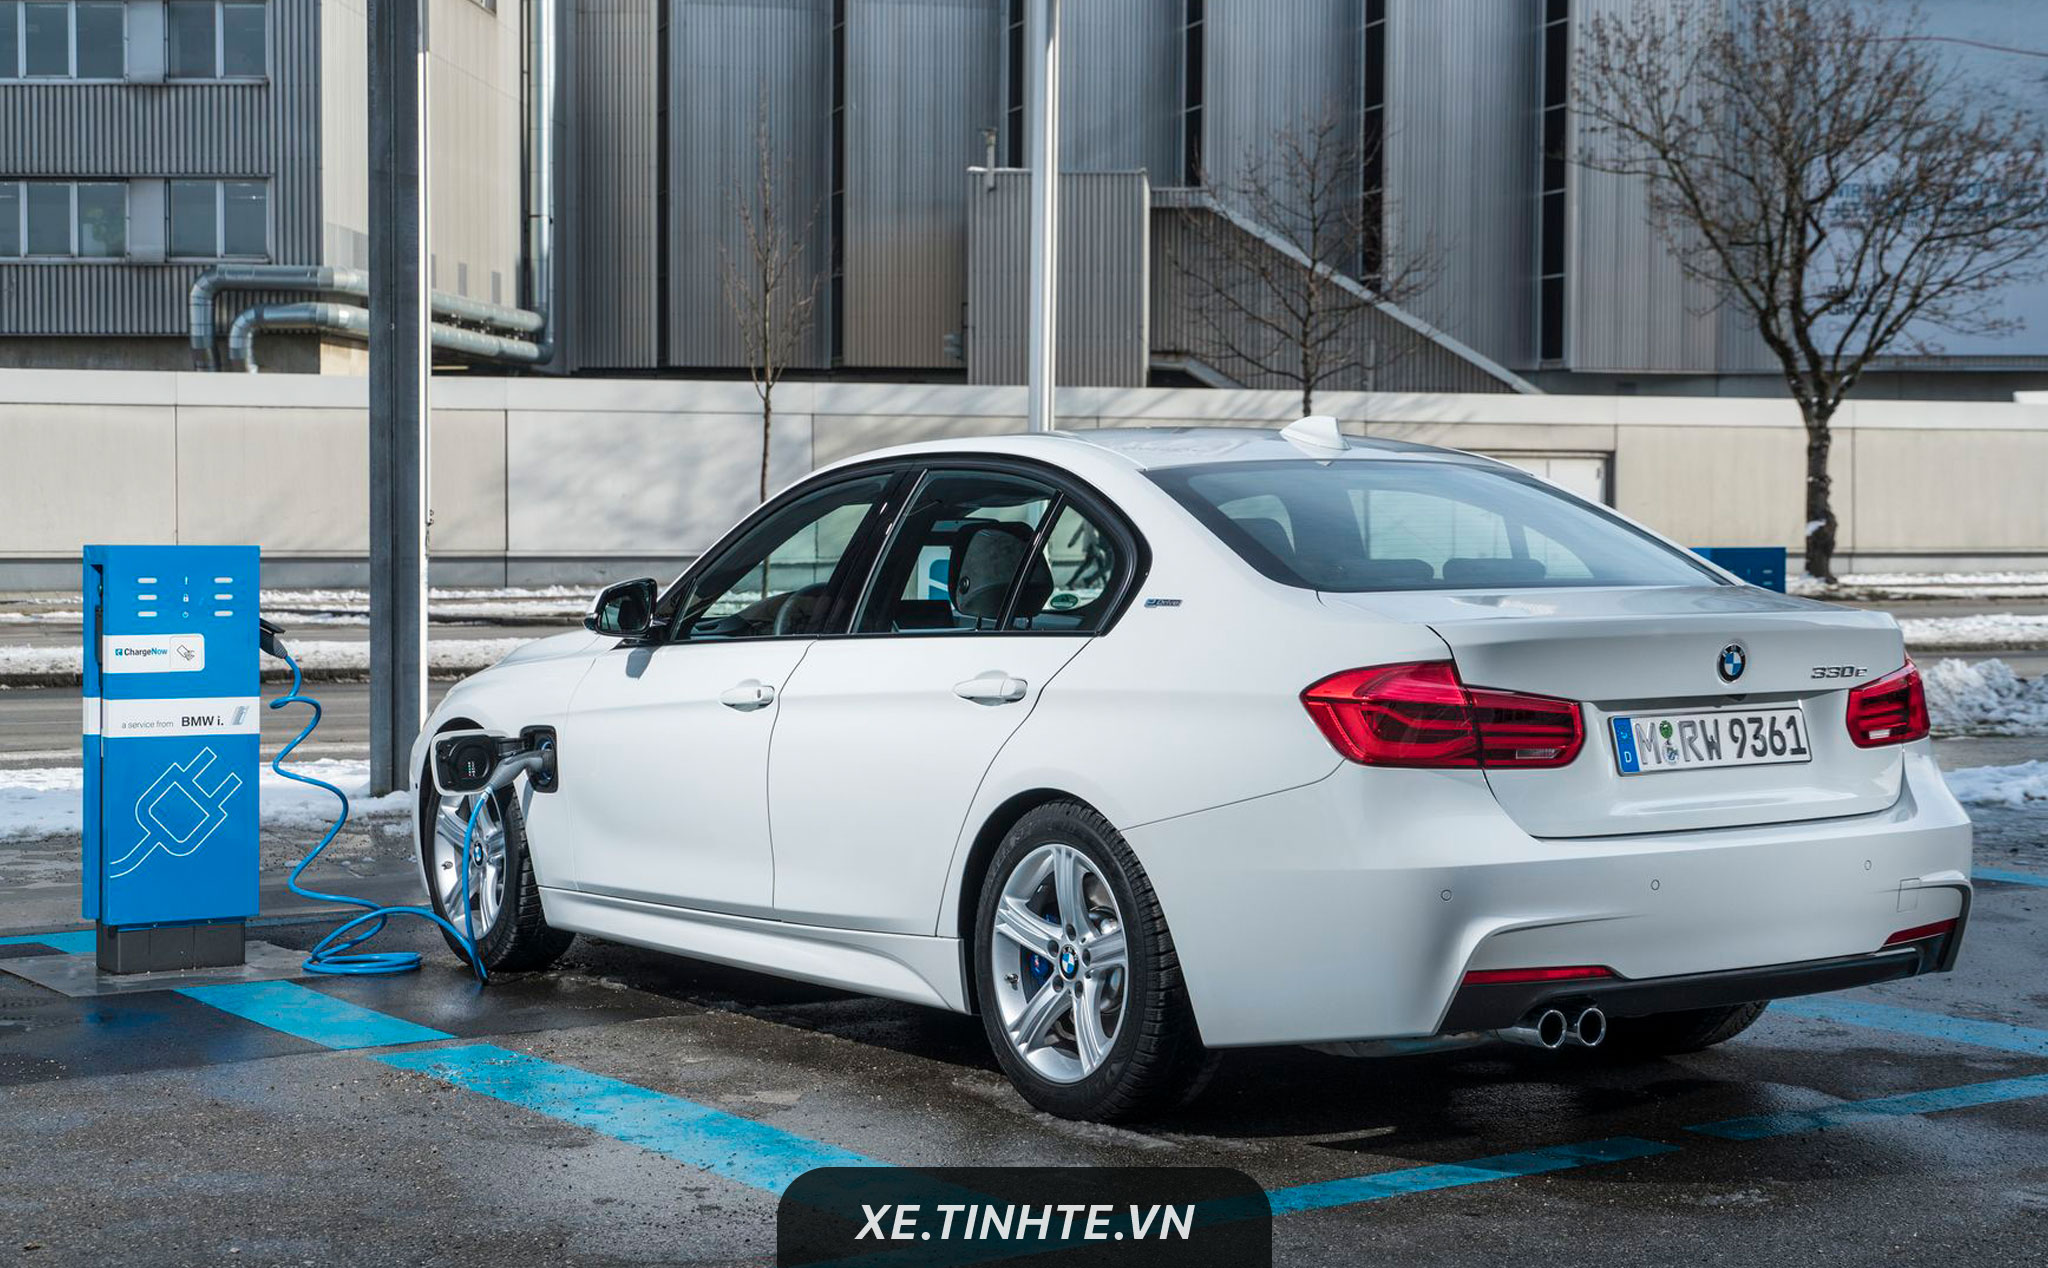 Xe hybird của BMW sẽ tự động chuyển sang chế độ chạy điện khi đi vào vùng ô nhiễm